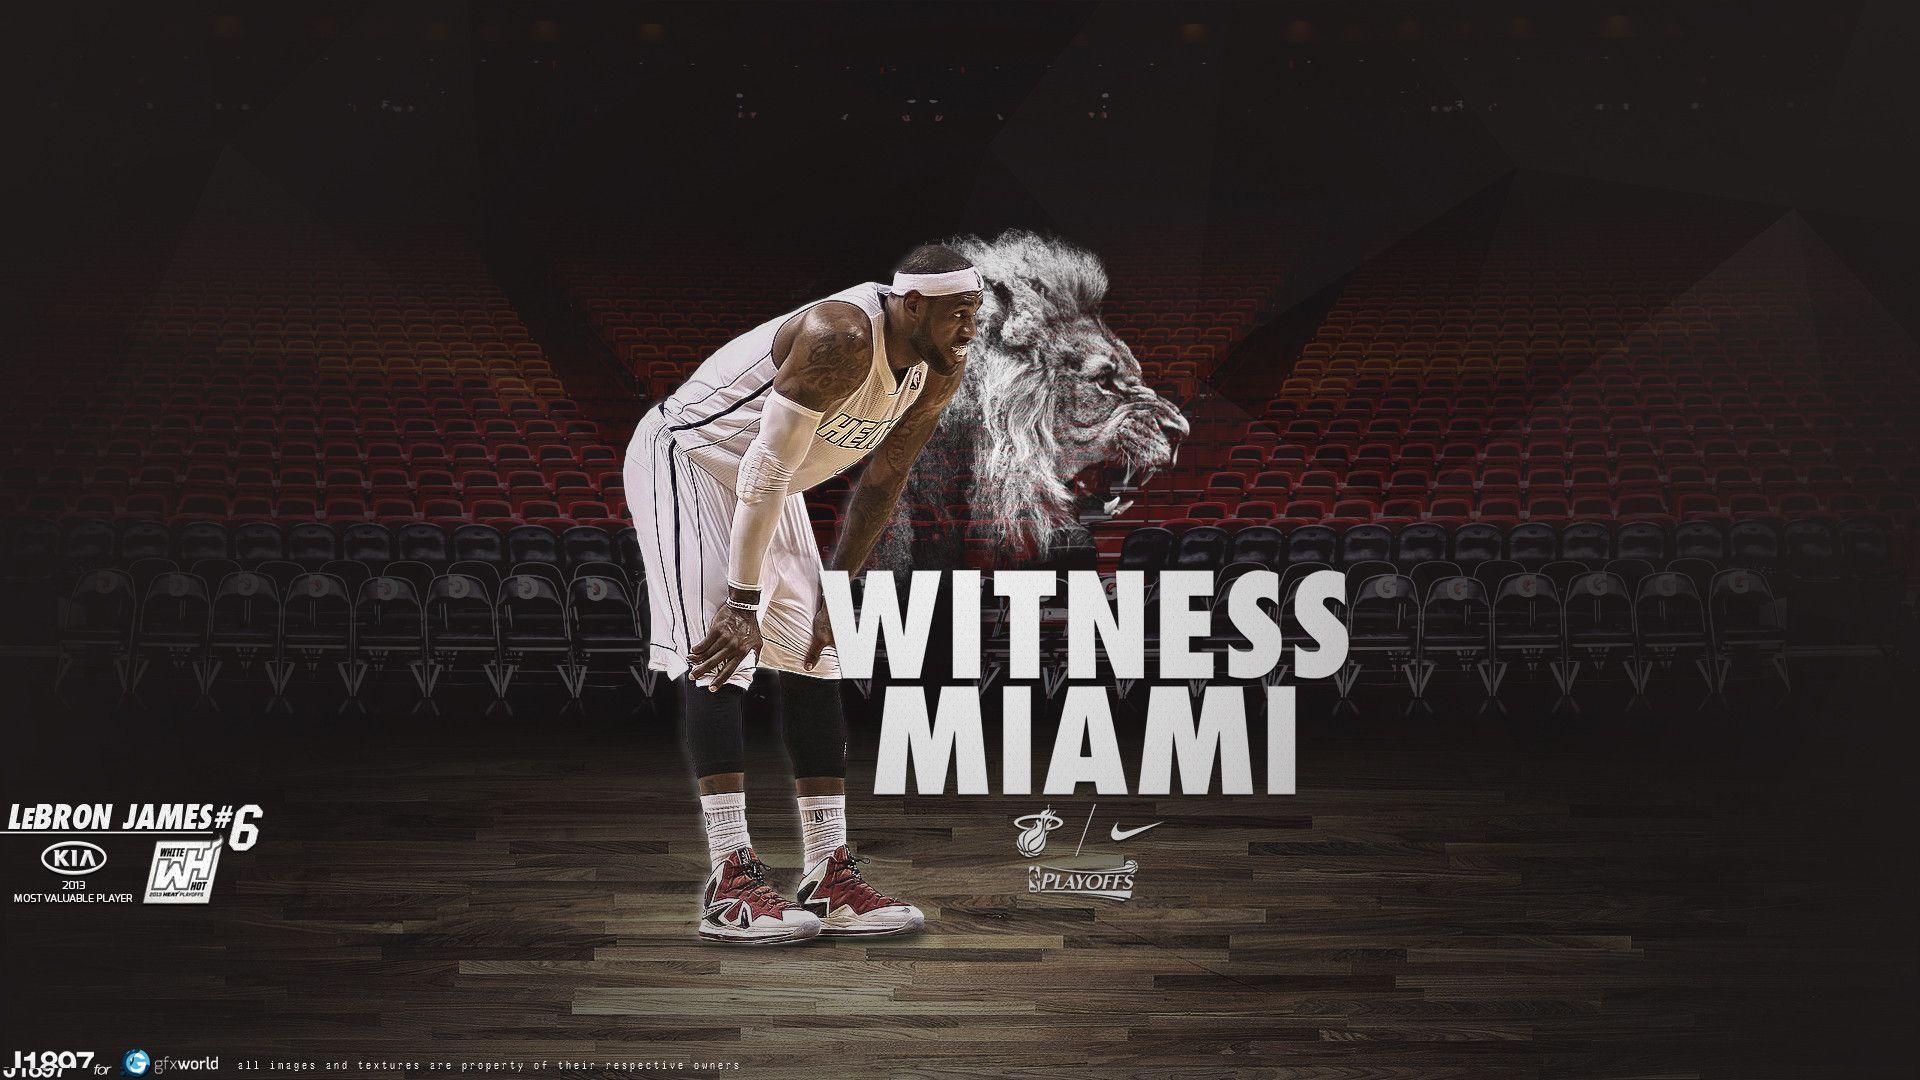 LeBron James Lion Witness Miami Wallpaper. TanukinoSippo